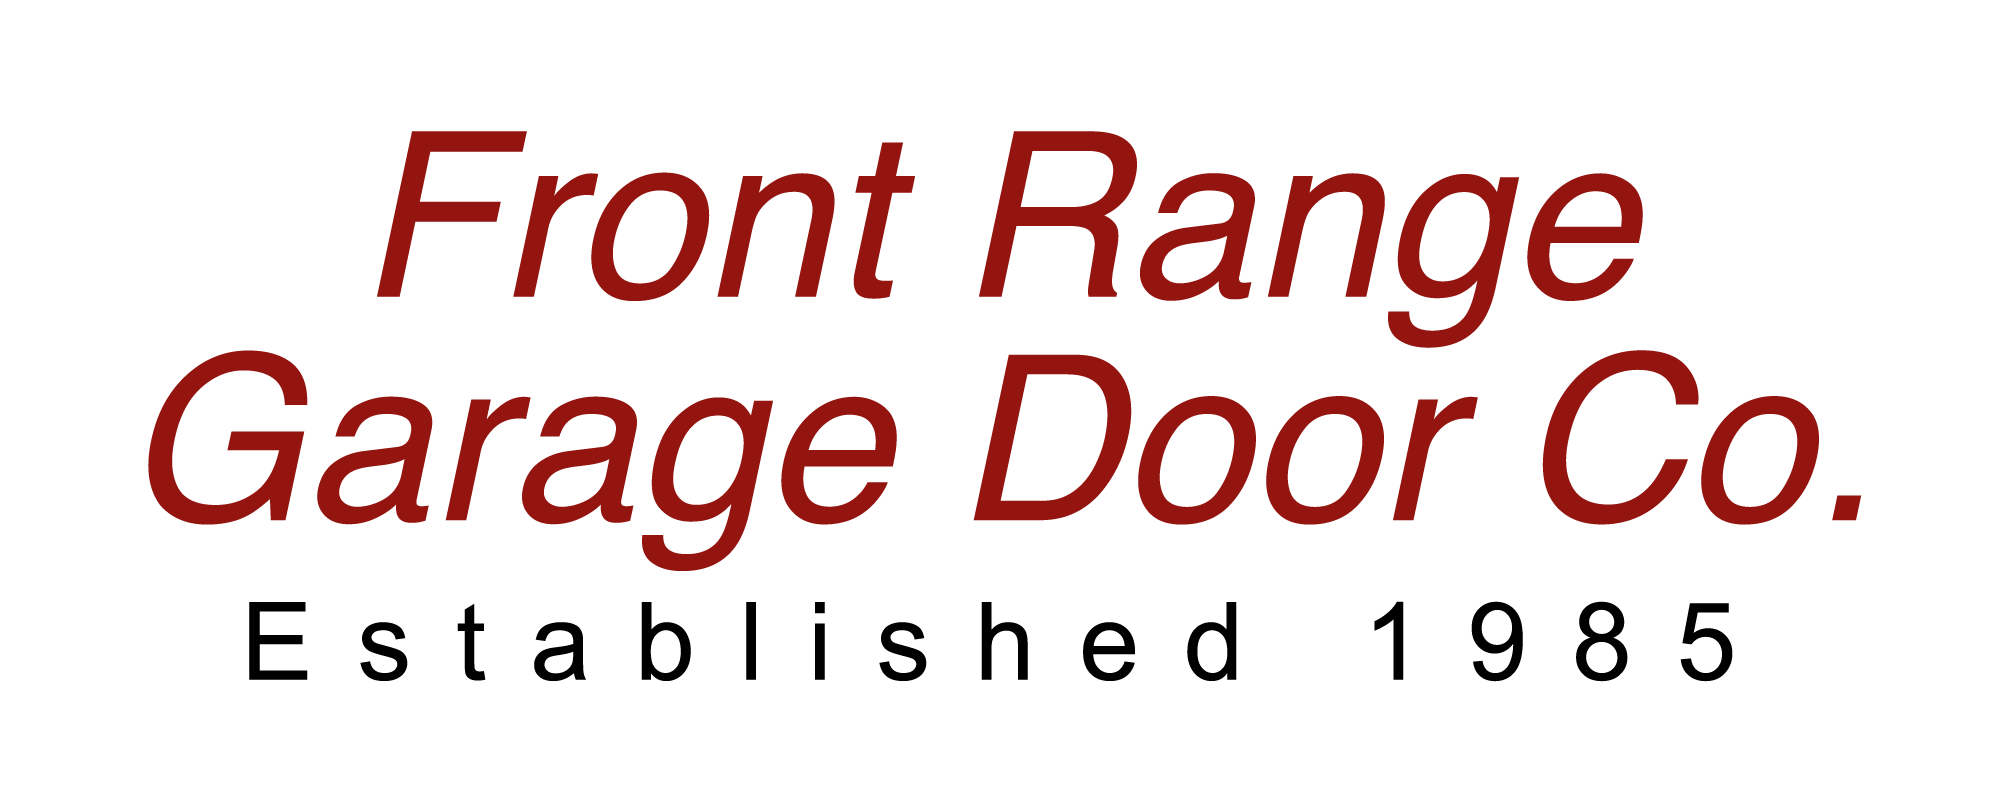 Get the best Garage Doors Services, Garage Door Parts, Garage Door Operators, Broken Spring & Broken Cable Replacement, & New Garage Doors in the Front Range!